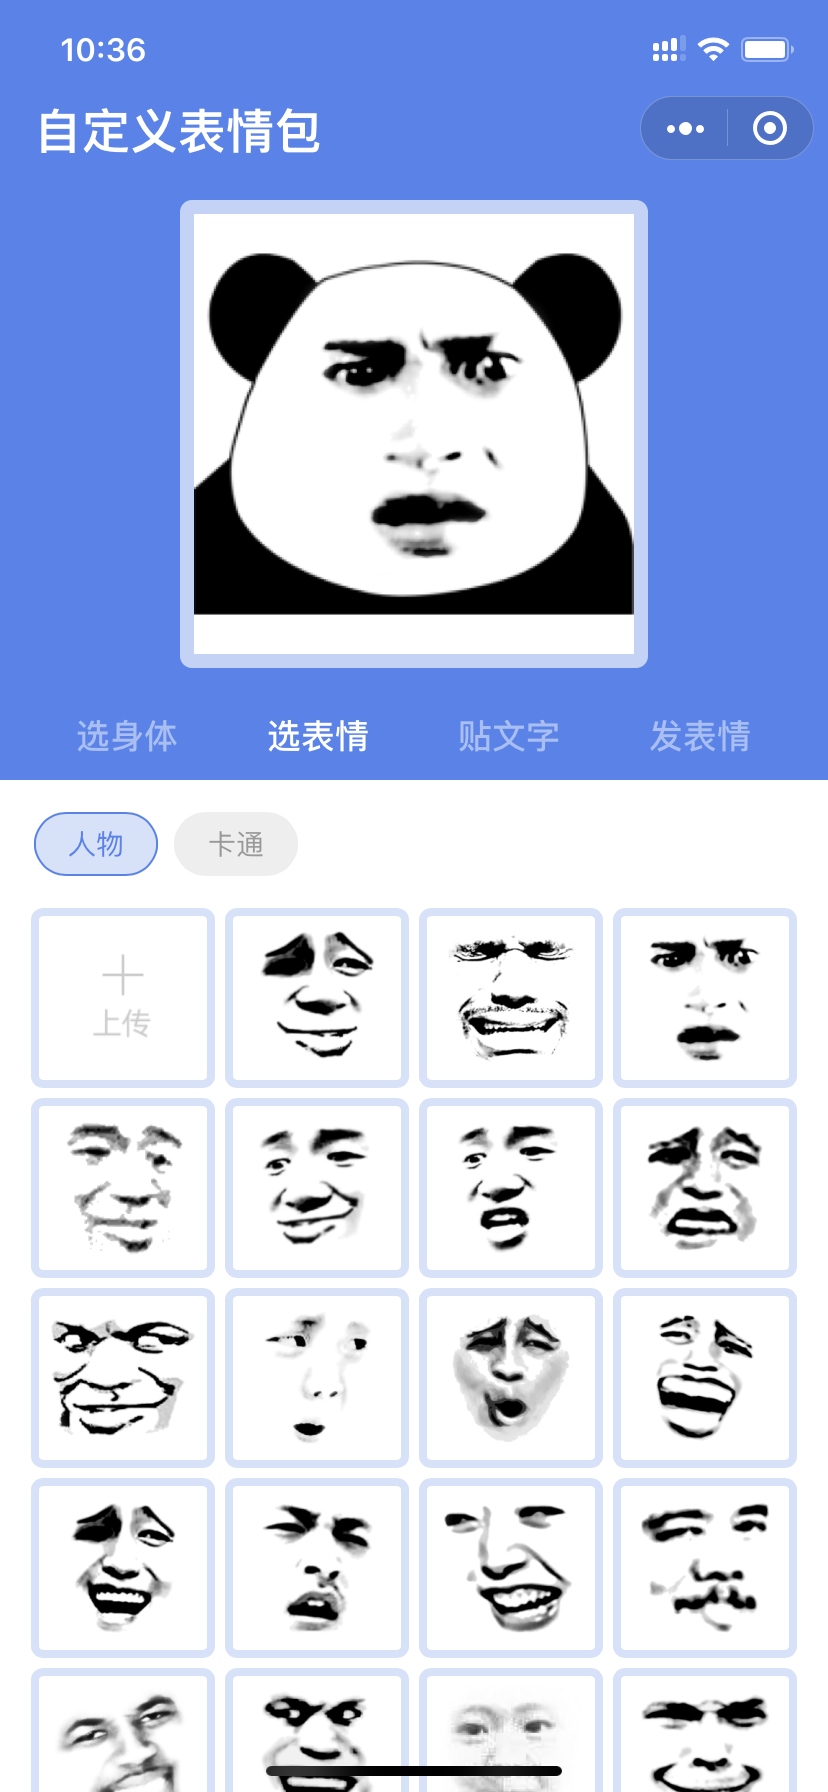 自定义表情 一 斗图表情包制作_自定义表情 一 斗图表情包制作小程序_自定义表情 一 斗图表情包制作微信小程序